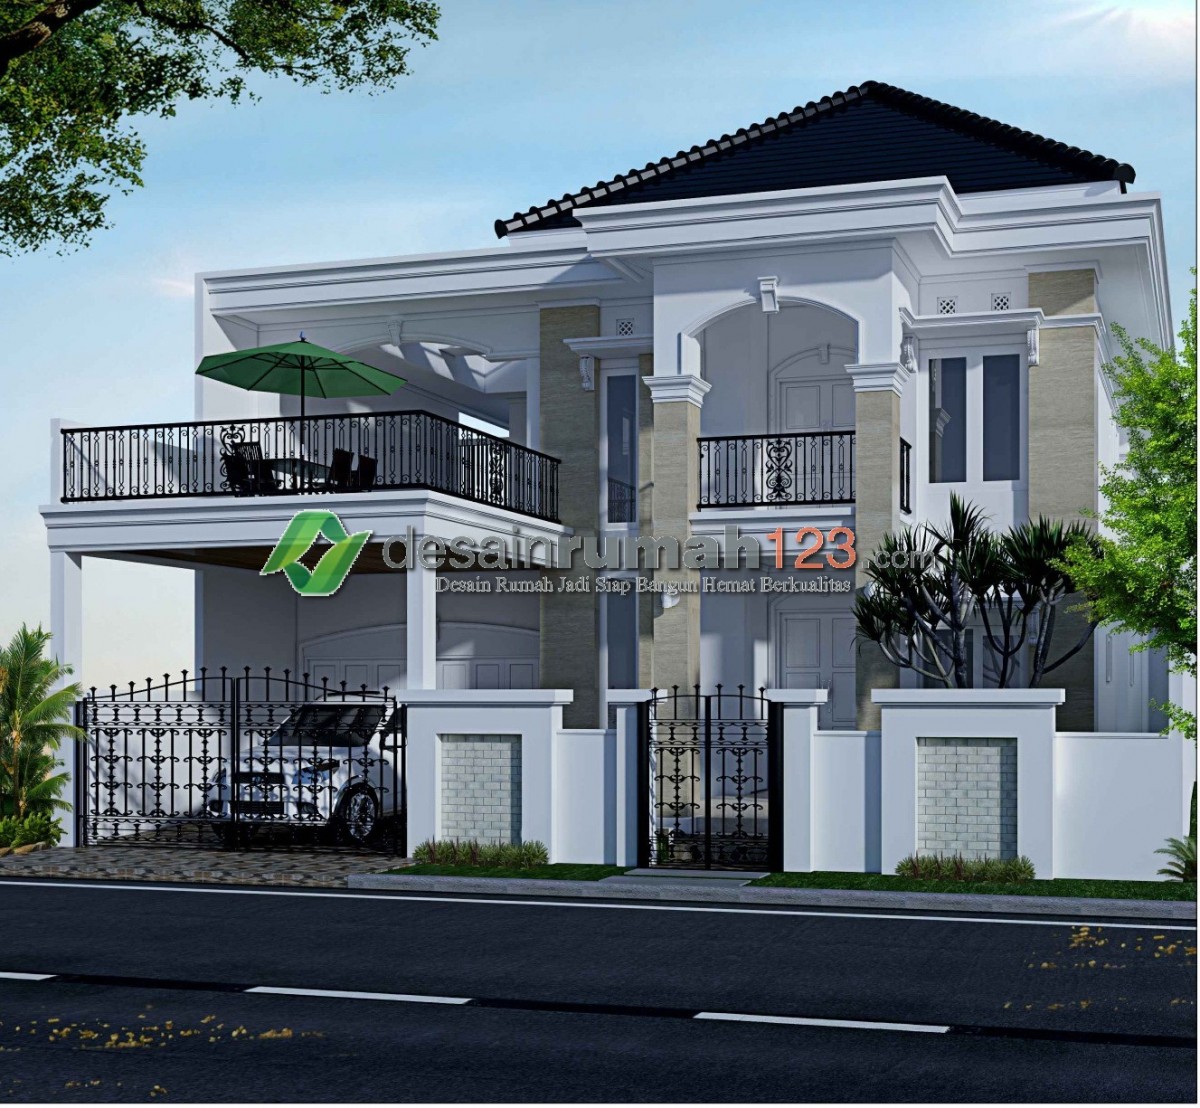 Desain Rumah Mewah Dan Elegan 2 Lantai Di Lahan 15 X 25 M2